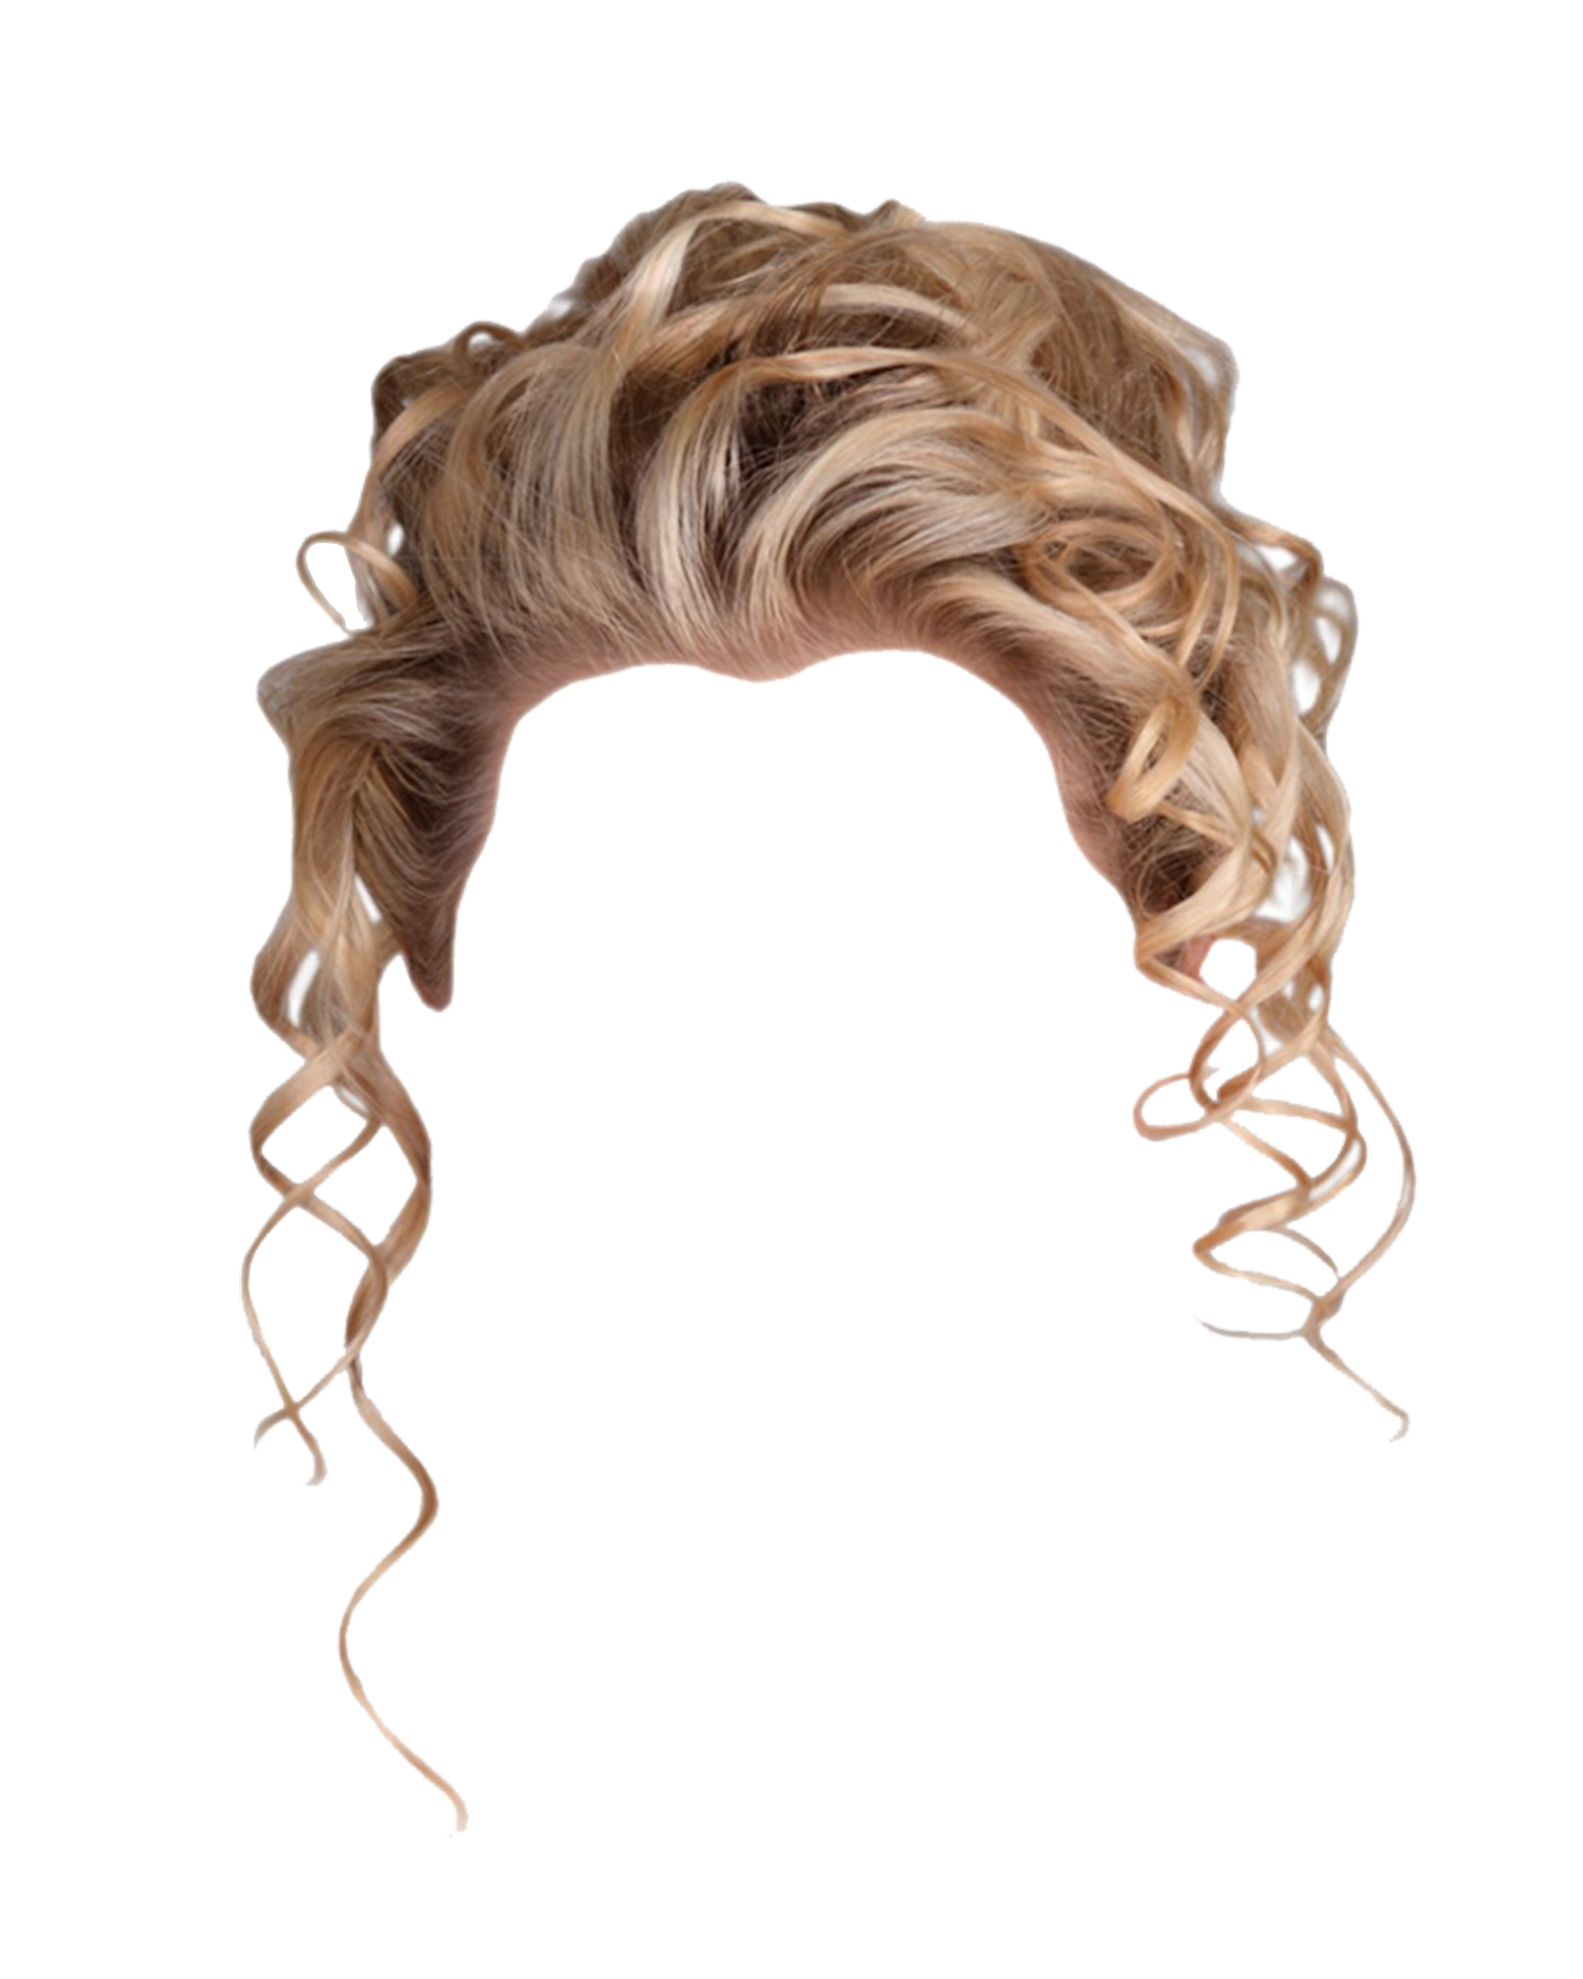 Wig Free PNG Image